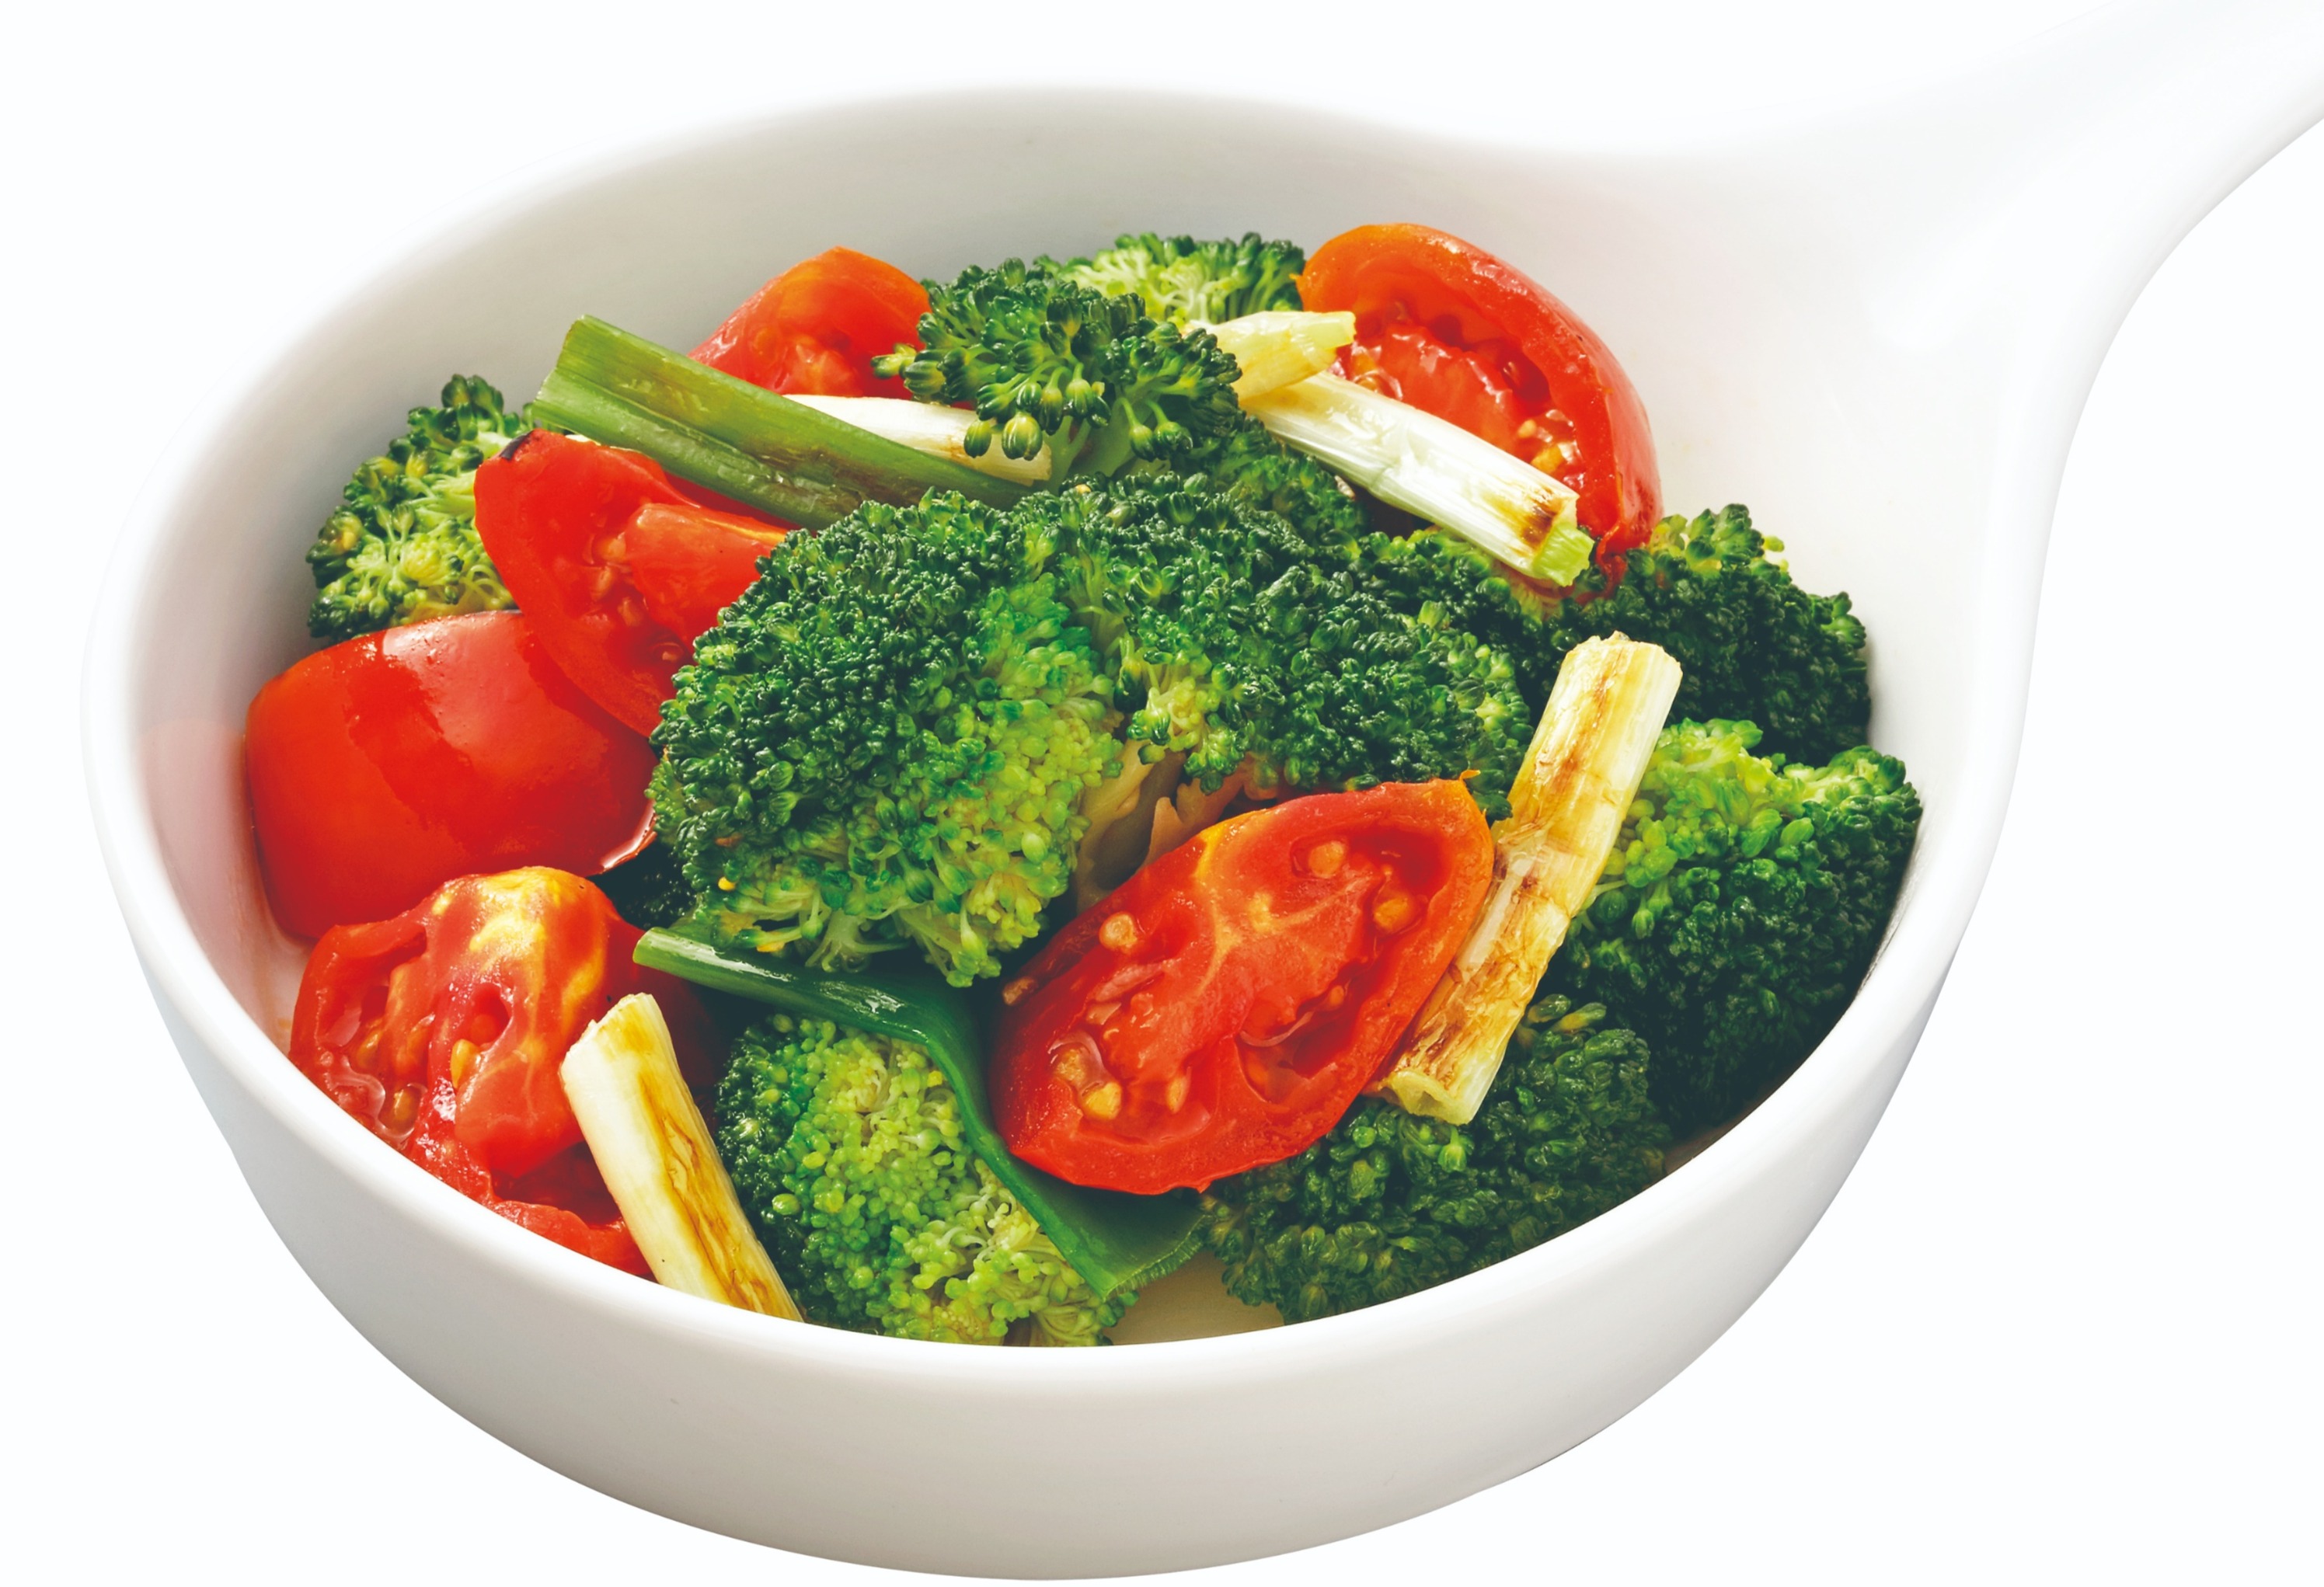 Stir-fried Broccoli with Tomato